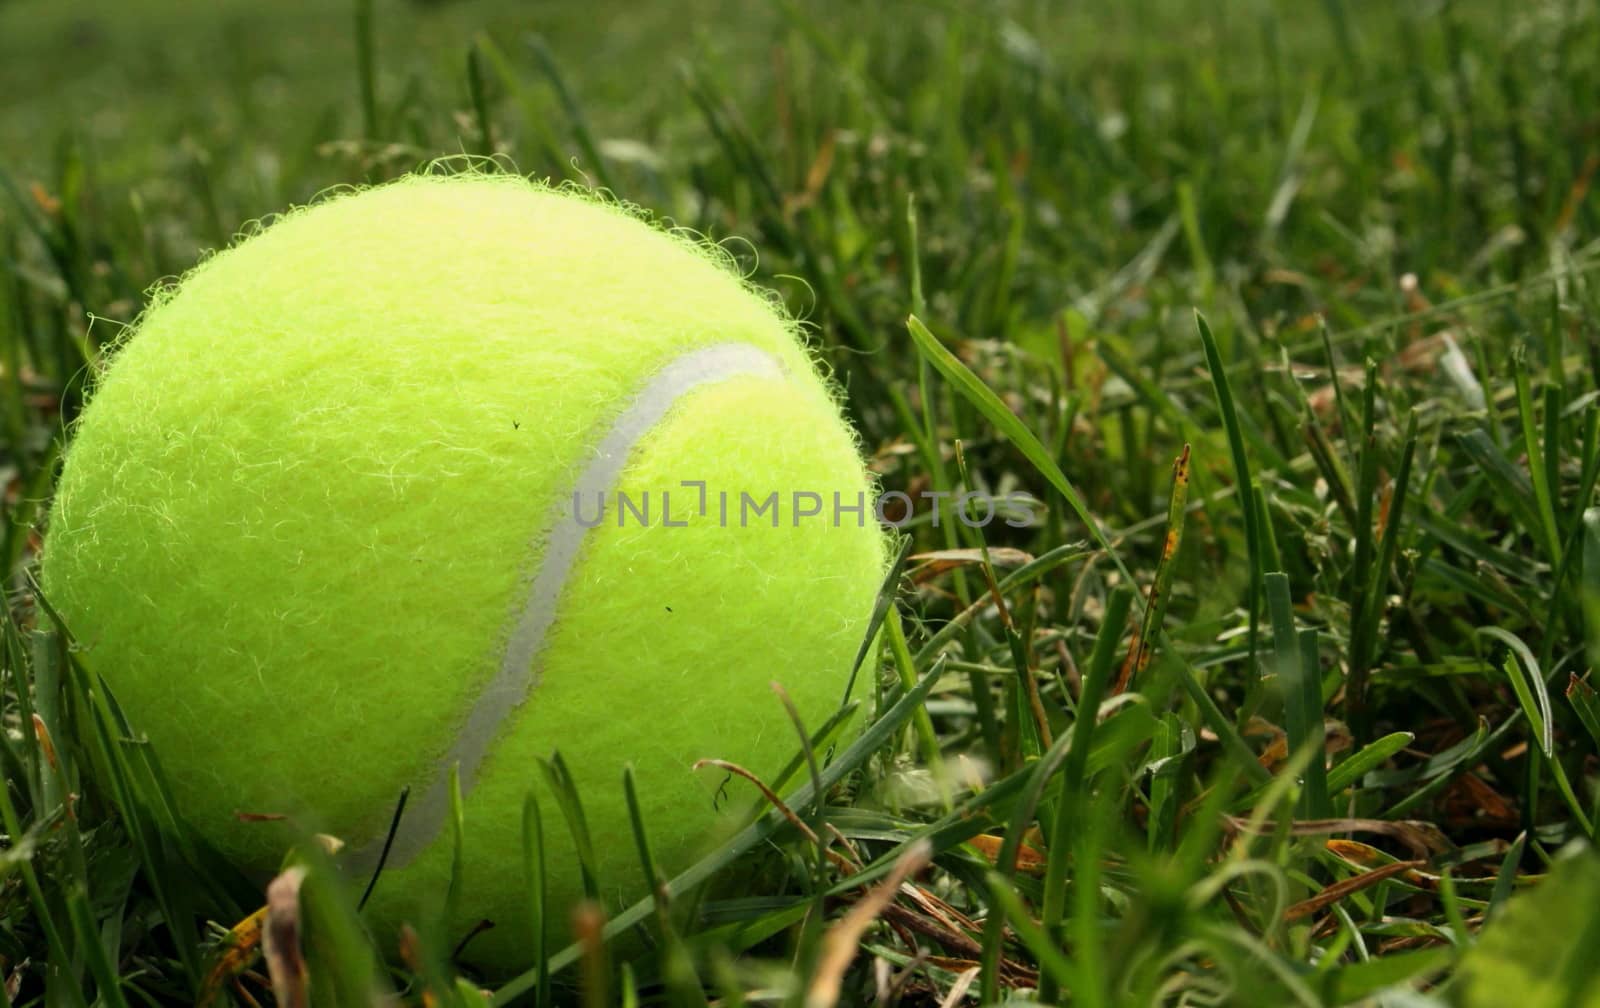 Tennis ball on the grass